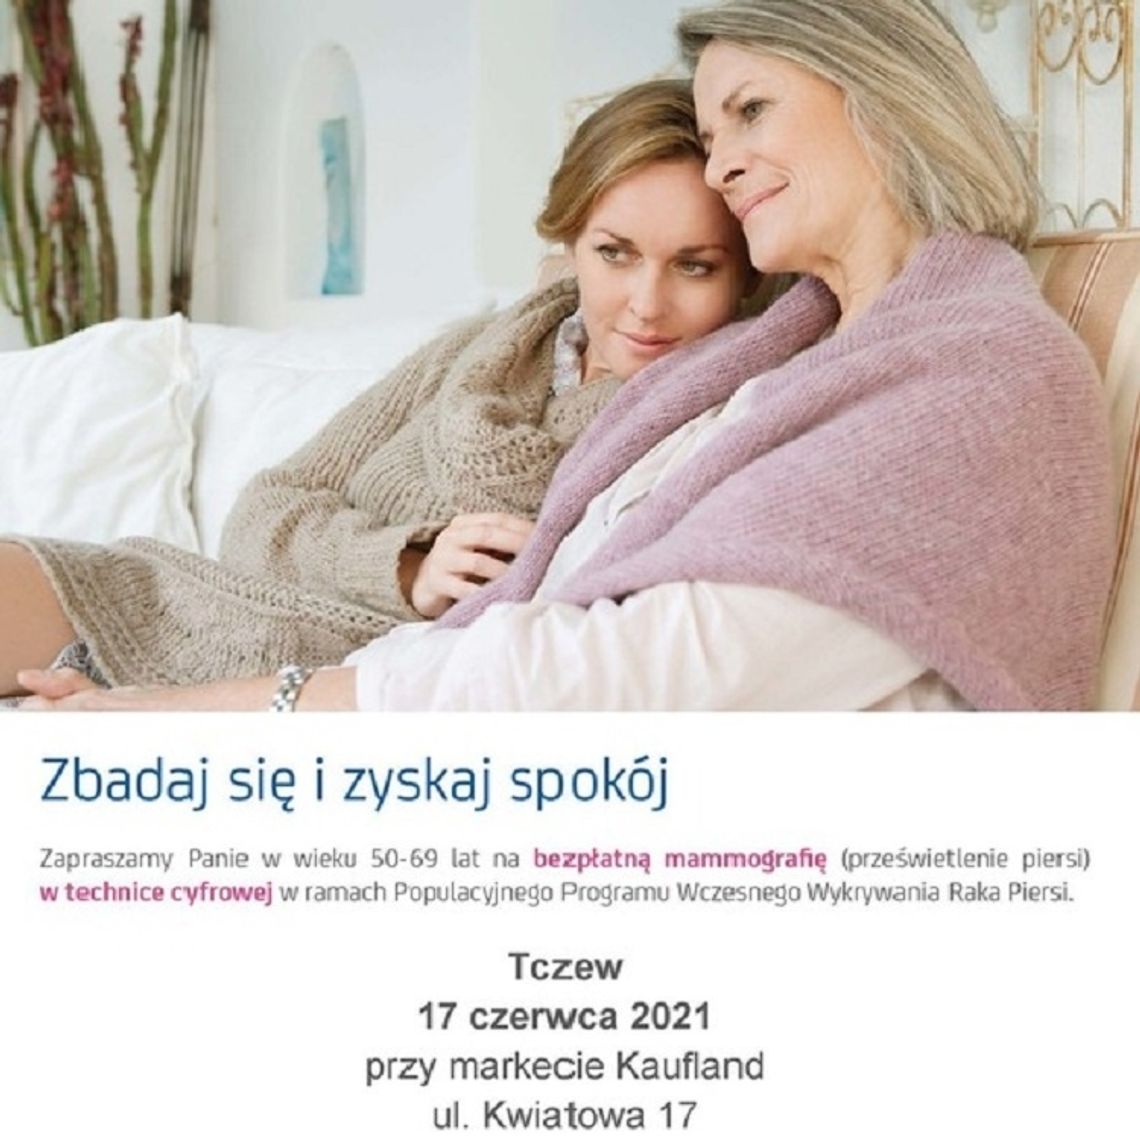 Bezpłatna mammografia w Tczewie już 17 czerwca